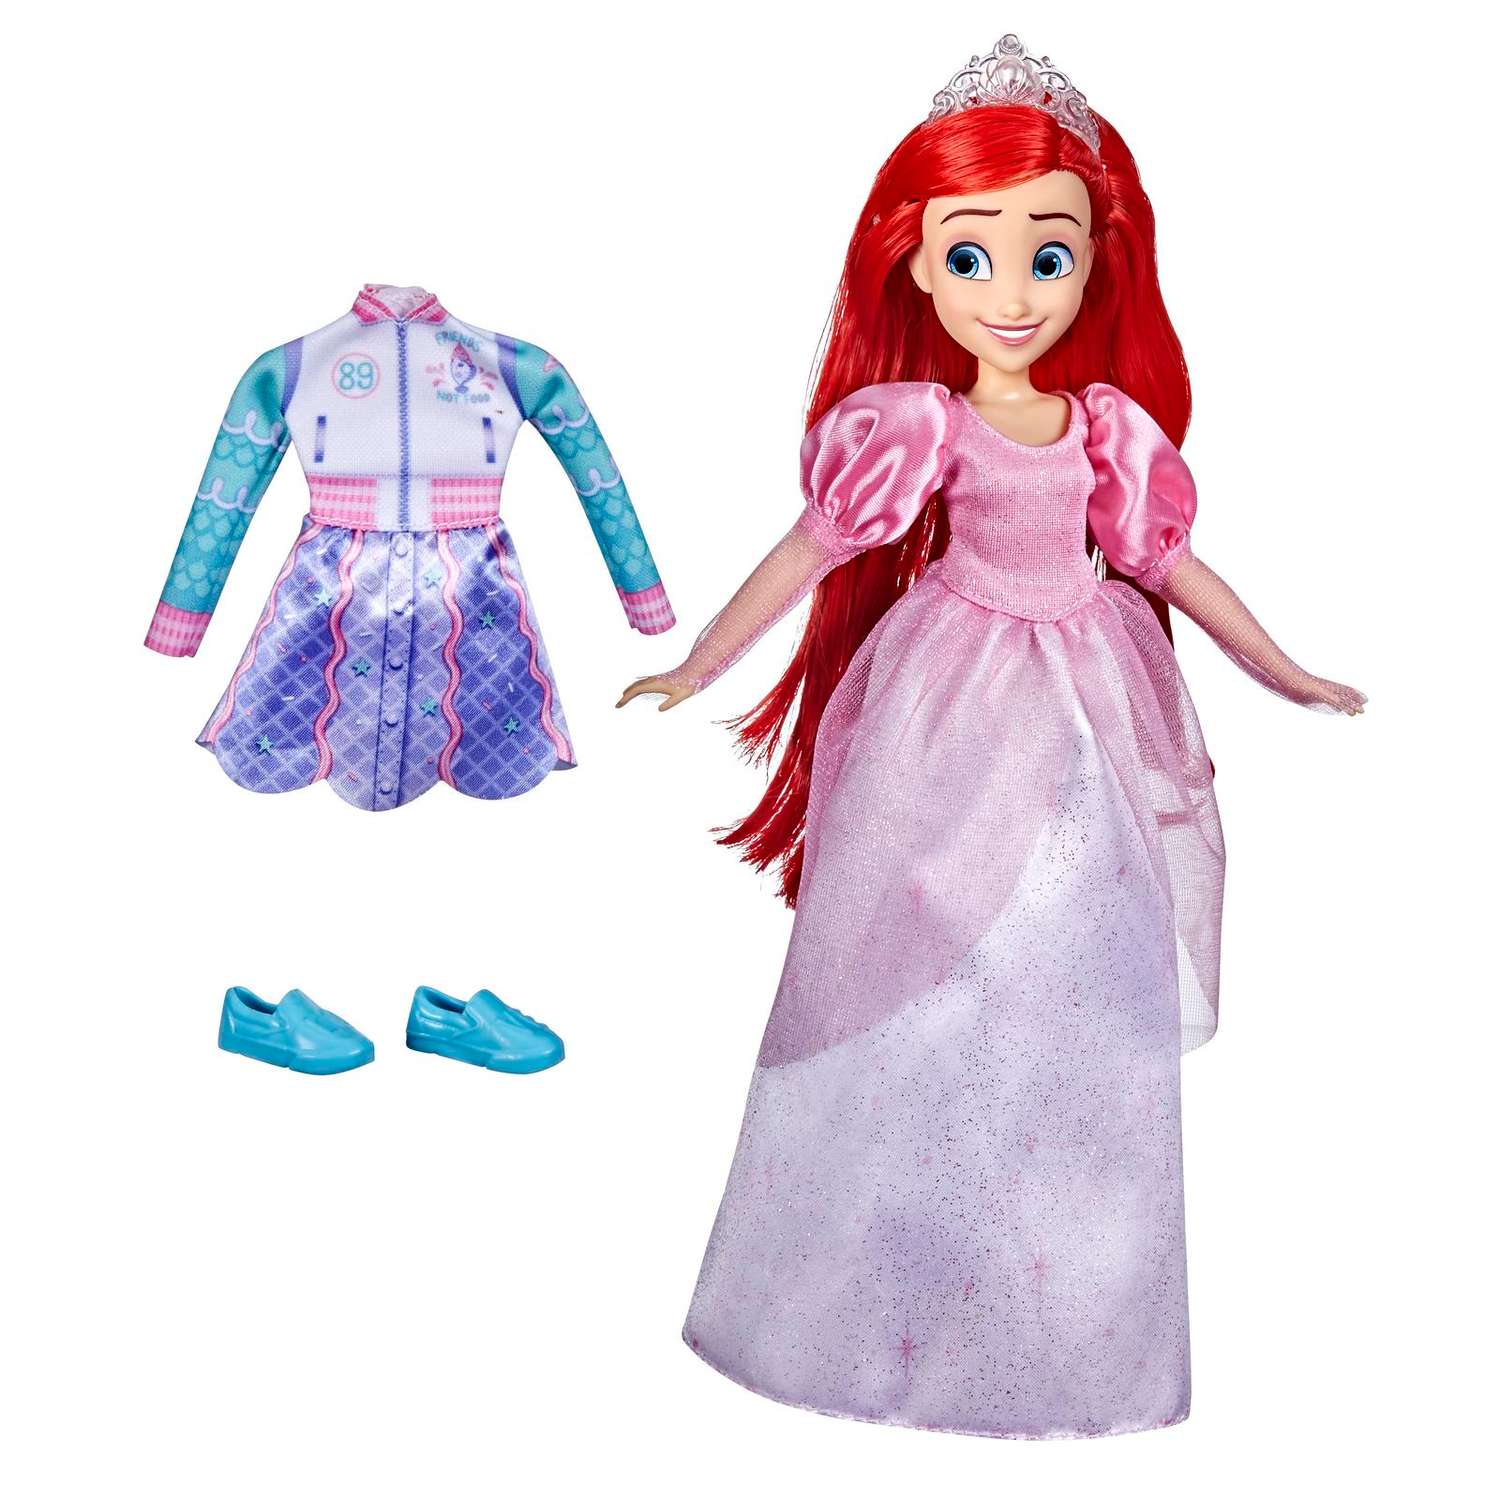 Кукла Disney Princess Disney Princess Hasbro Комфи Ариэль 2наряда F23665X0 F23665X0 - фото 1